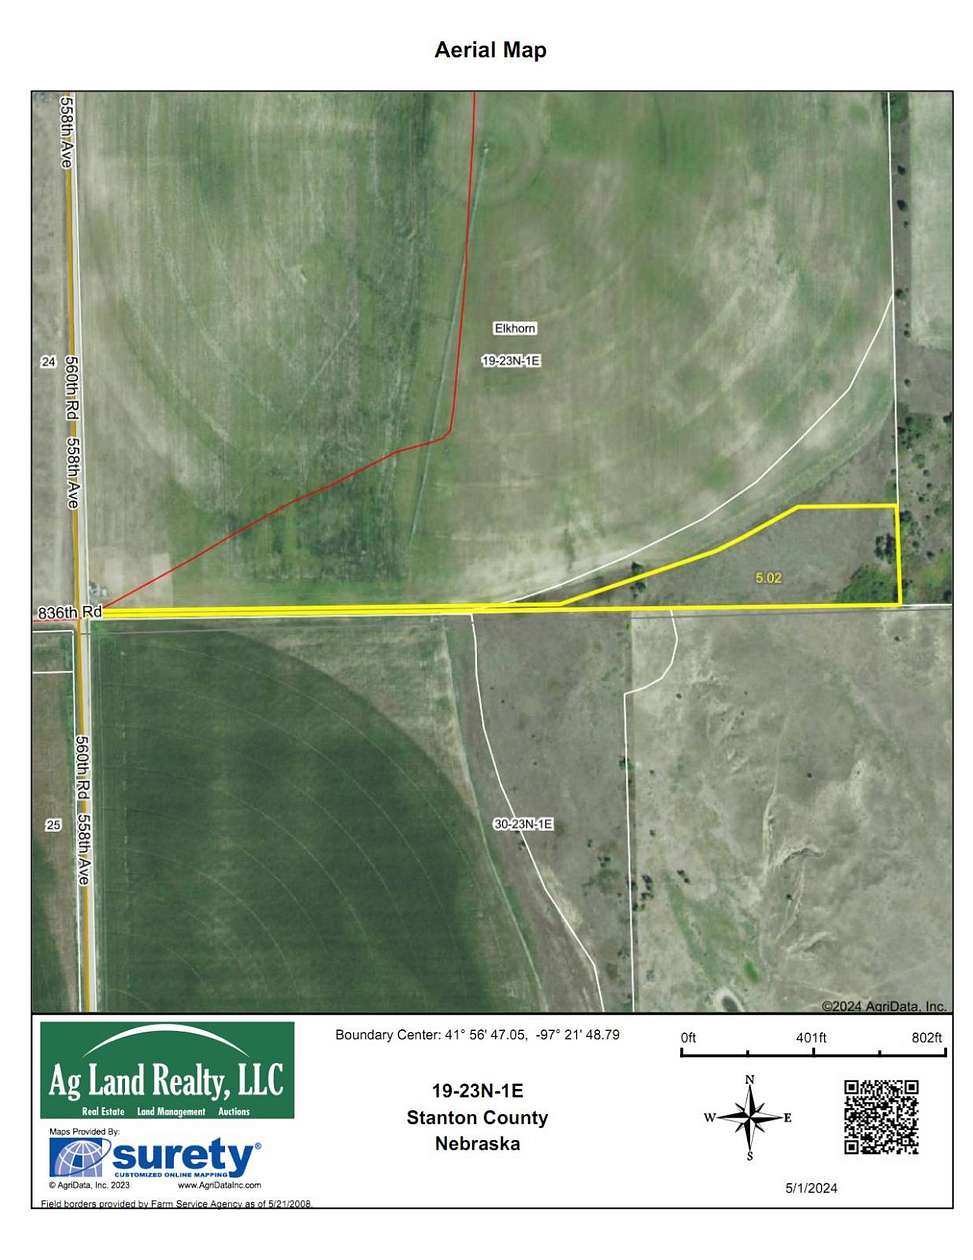 5 Acres of Residential Land for Sale in Norfolk, Nebraska